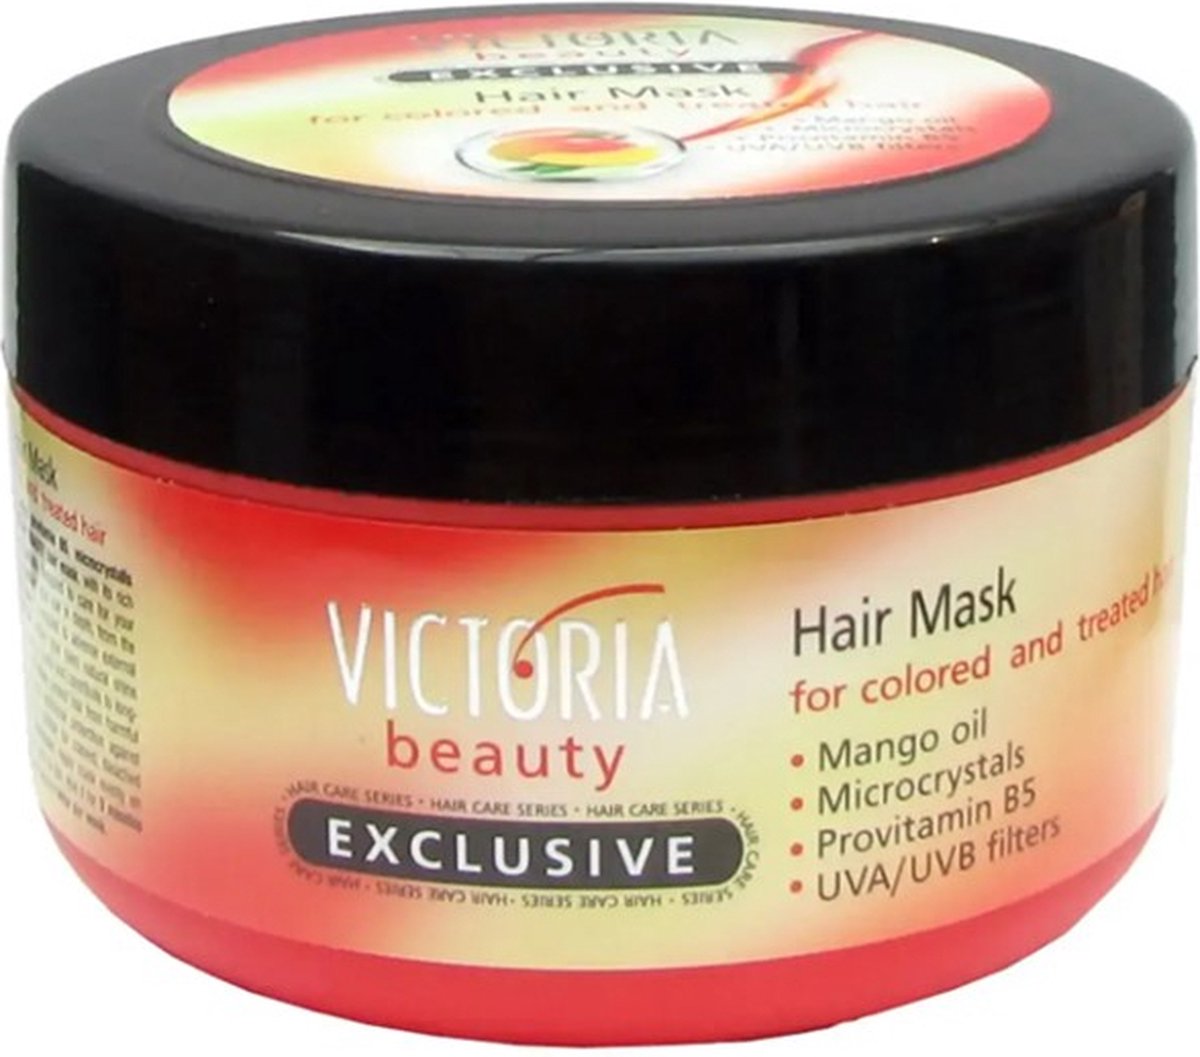 Victoria Beauty - Haar masker 350 ml voor geverfd, gebleekt en behandeld haar